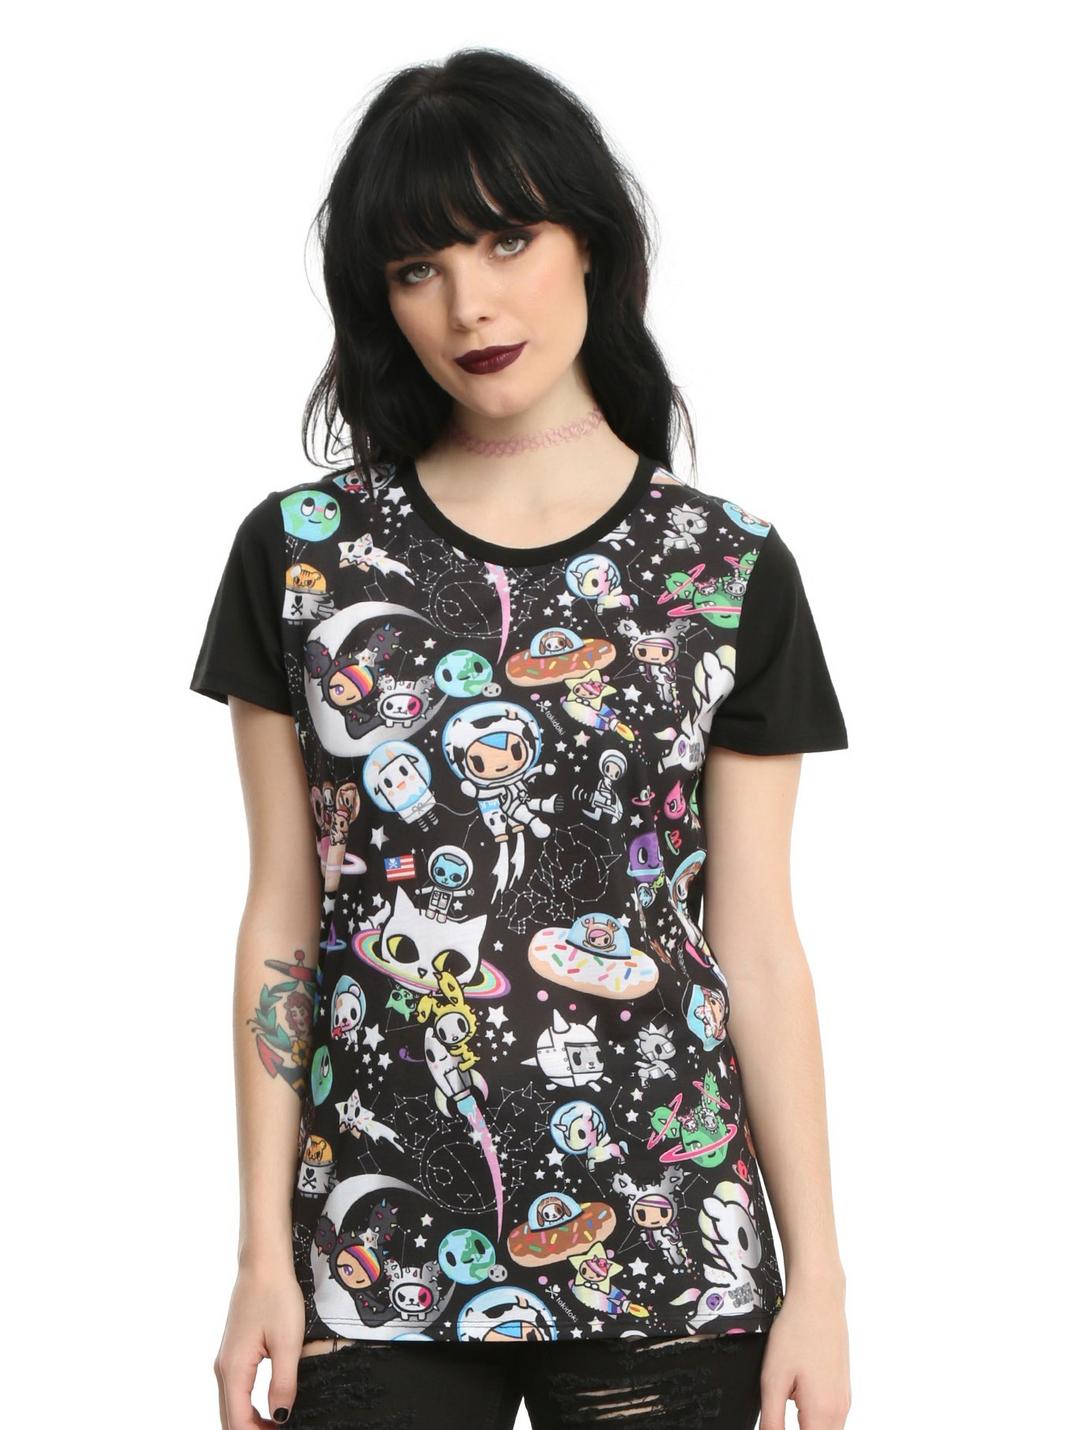 Tokidoki Allover Space Print Girls T-Shirt, BLACK, hi-res